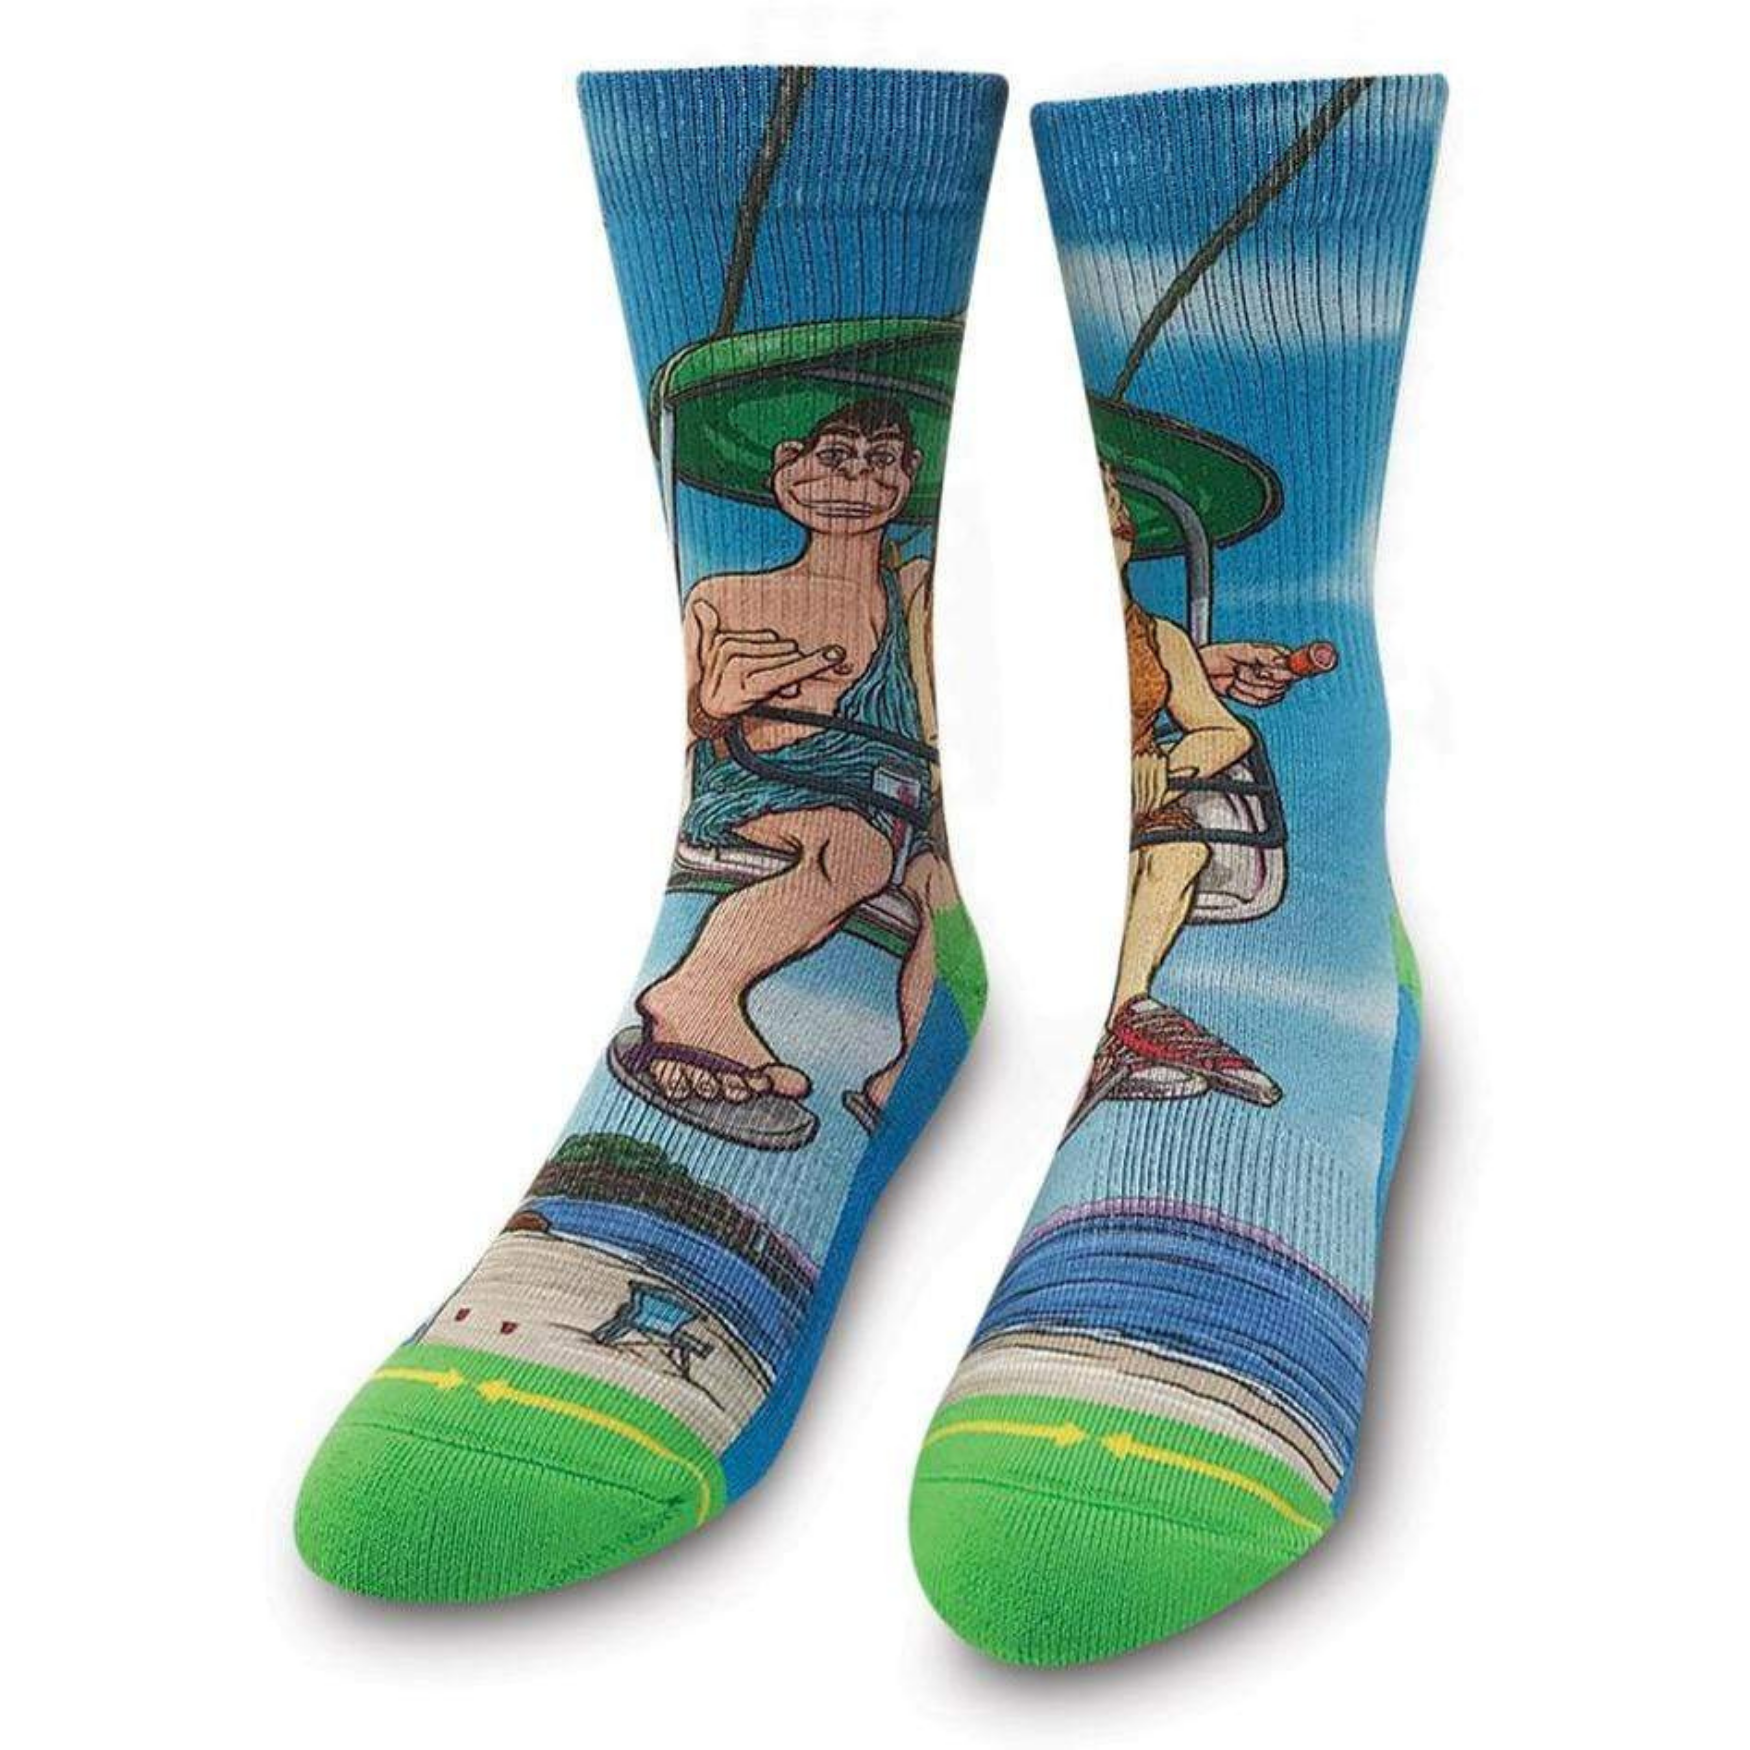 Introducing Healthy Seas Socks – crazyarms